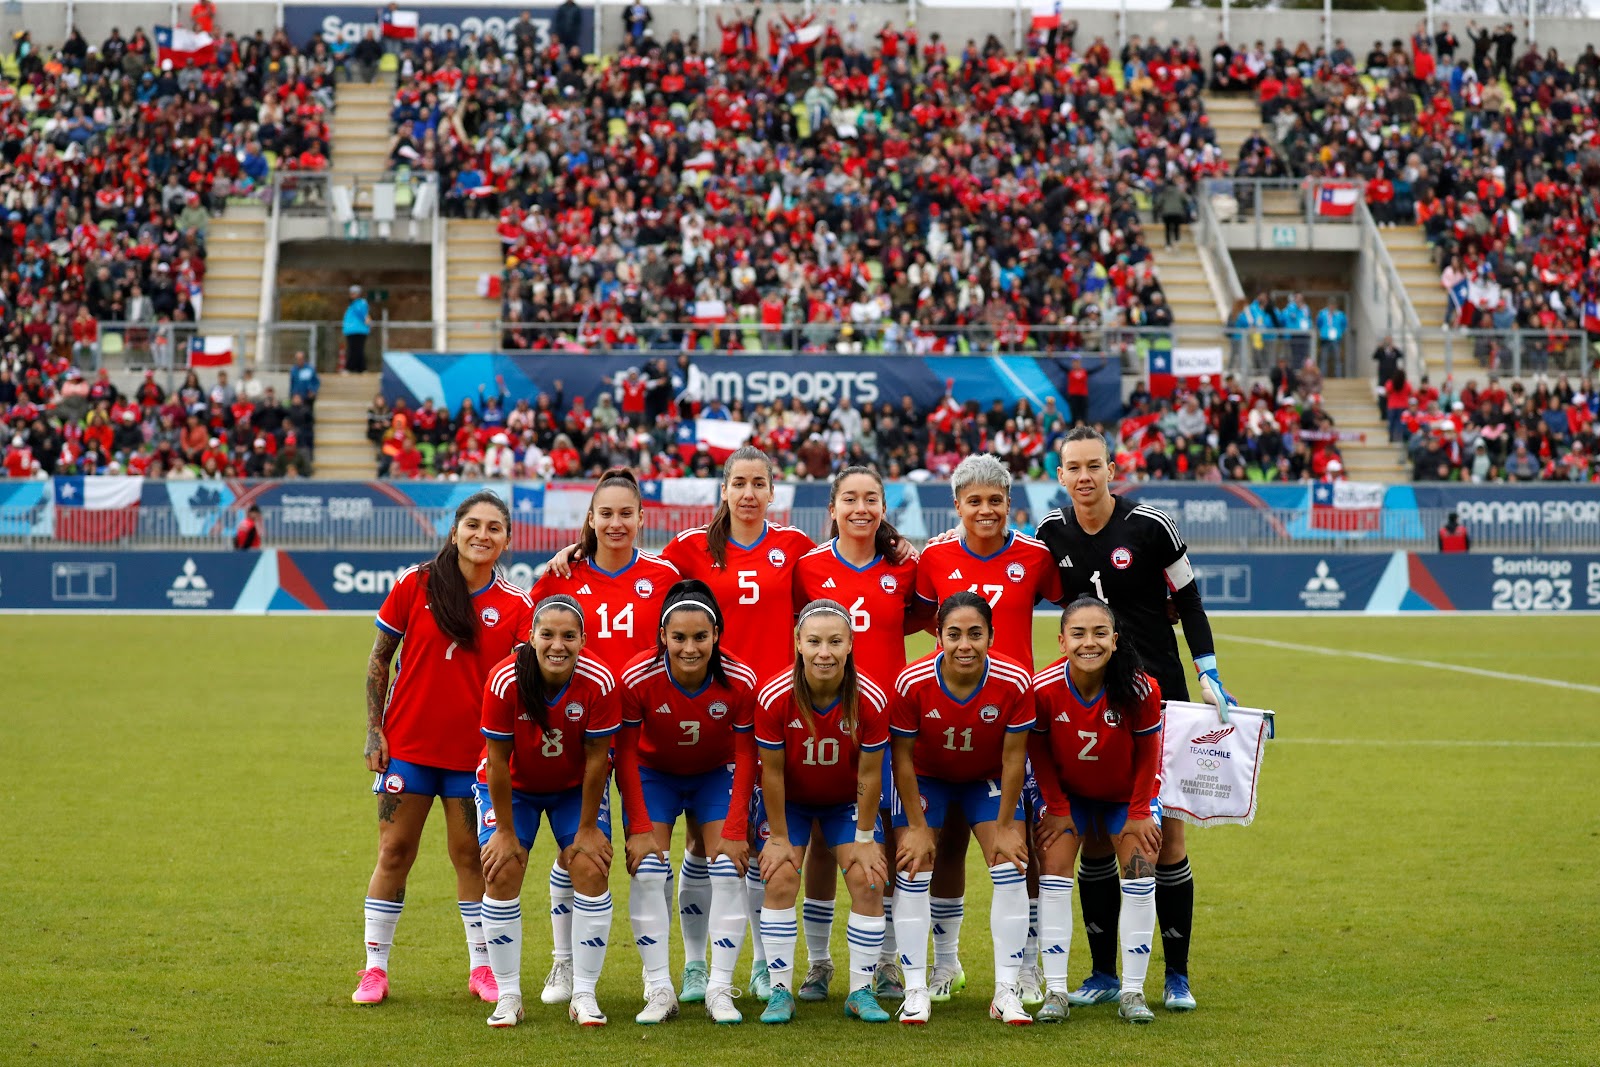 Formación de selección femenina de Chile ante Jamaica, Juegos Panamericanos Santiago 2023, 28 de octubre